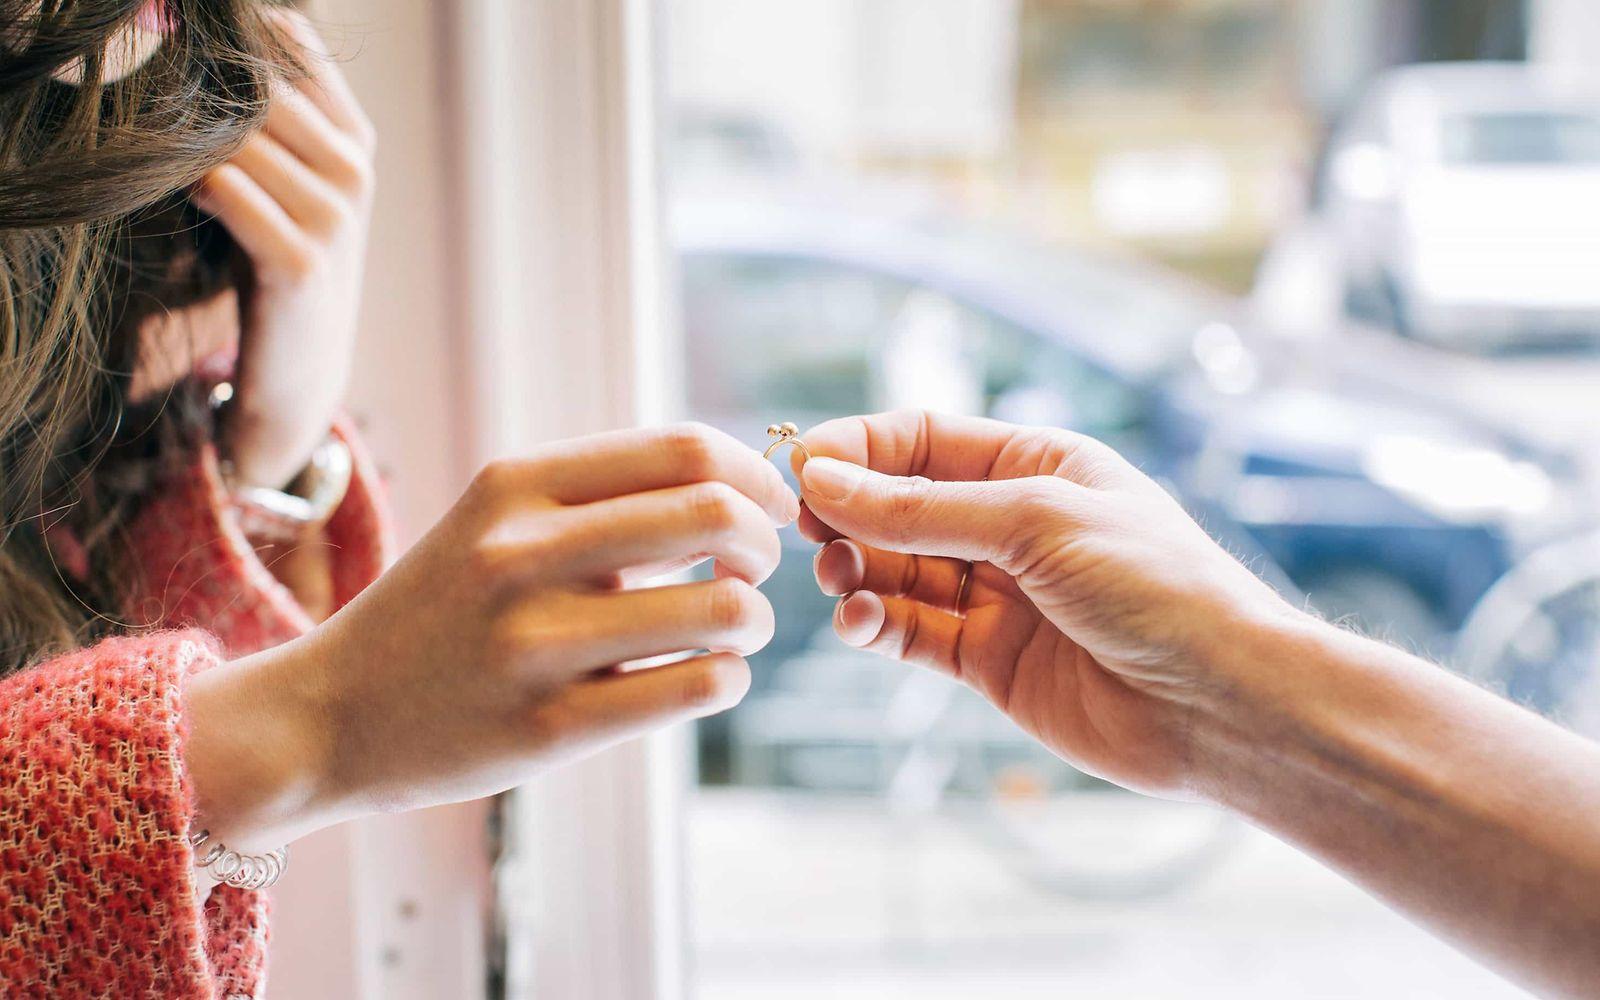 Kontaktallergie: Eine Frauenhand und eine Männerhand halten gemeinsam einen Ring.